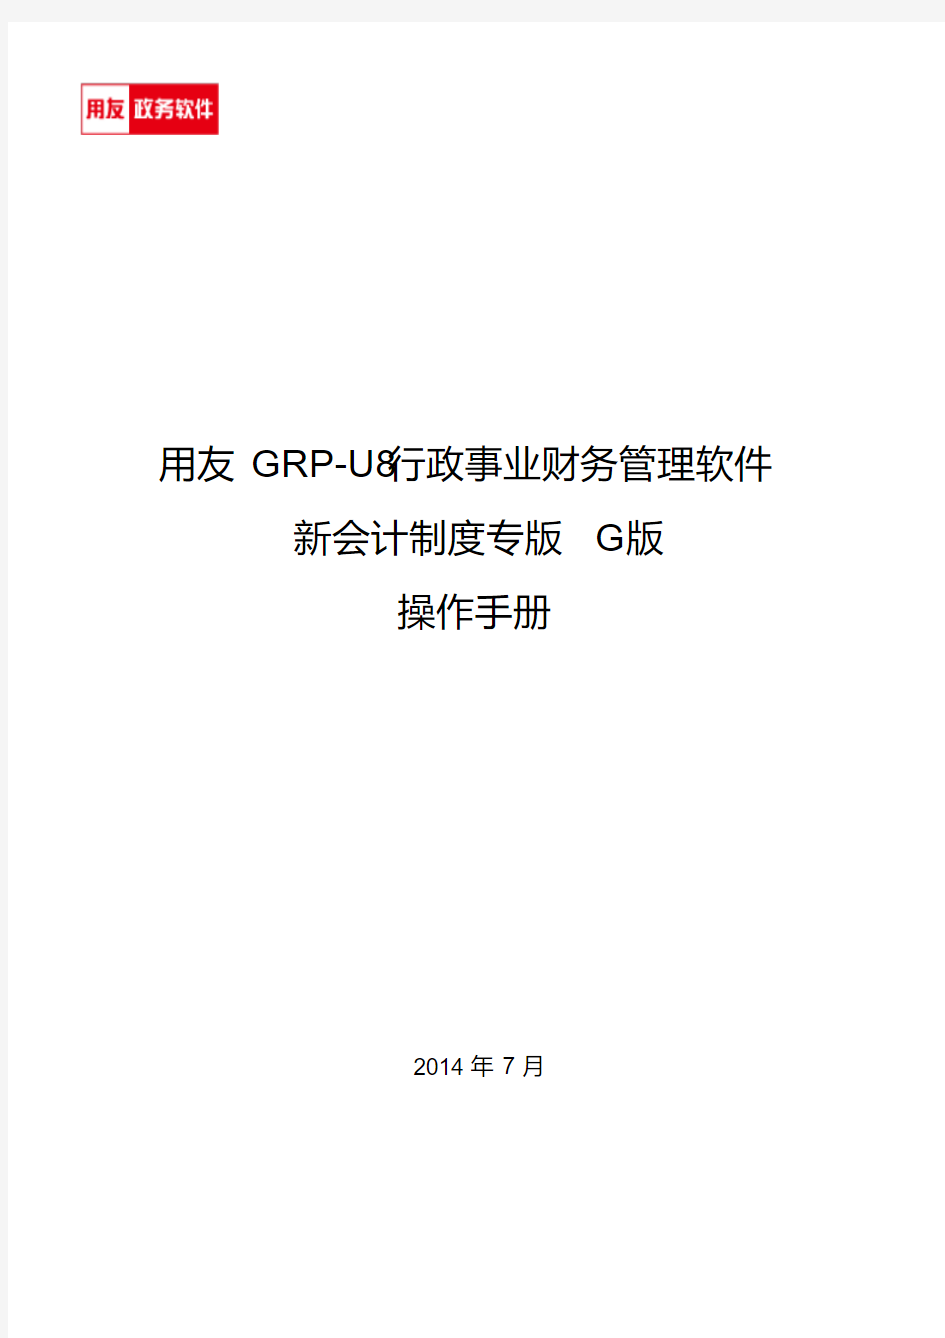 用友GRP-U8行政事业单位财务管理软件G版操作手册_图文分析